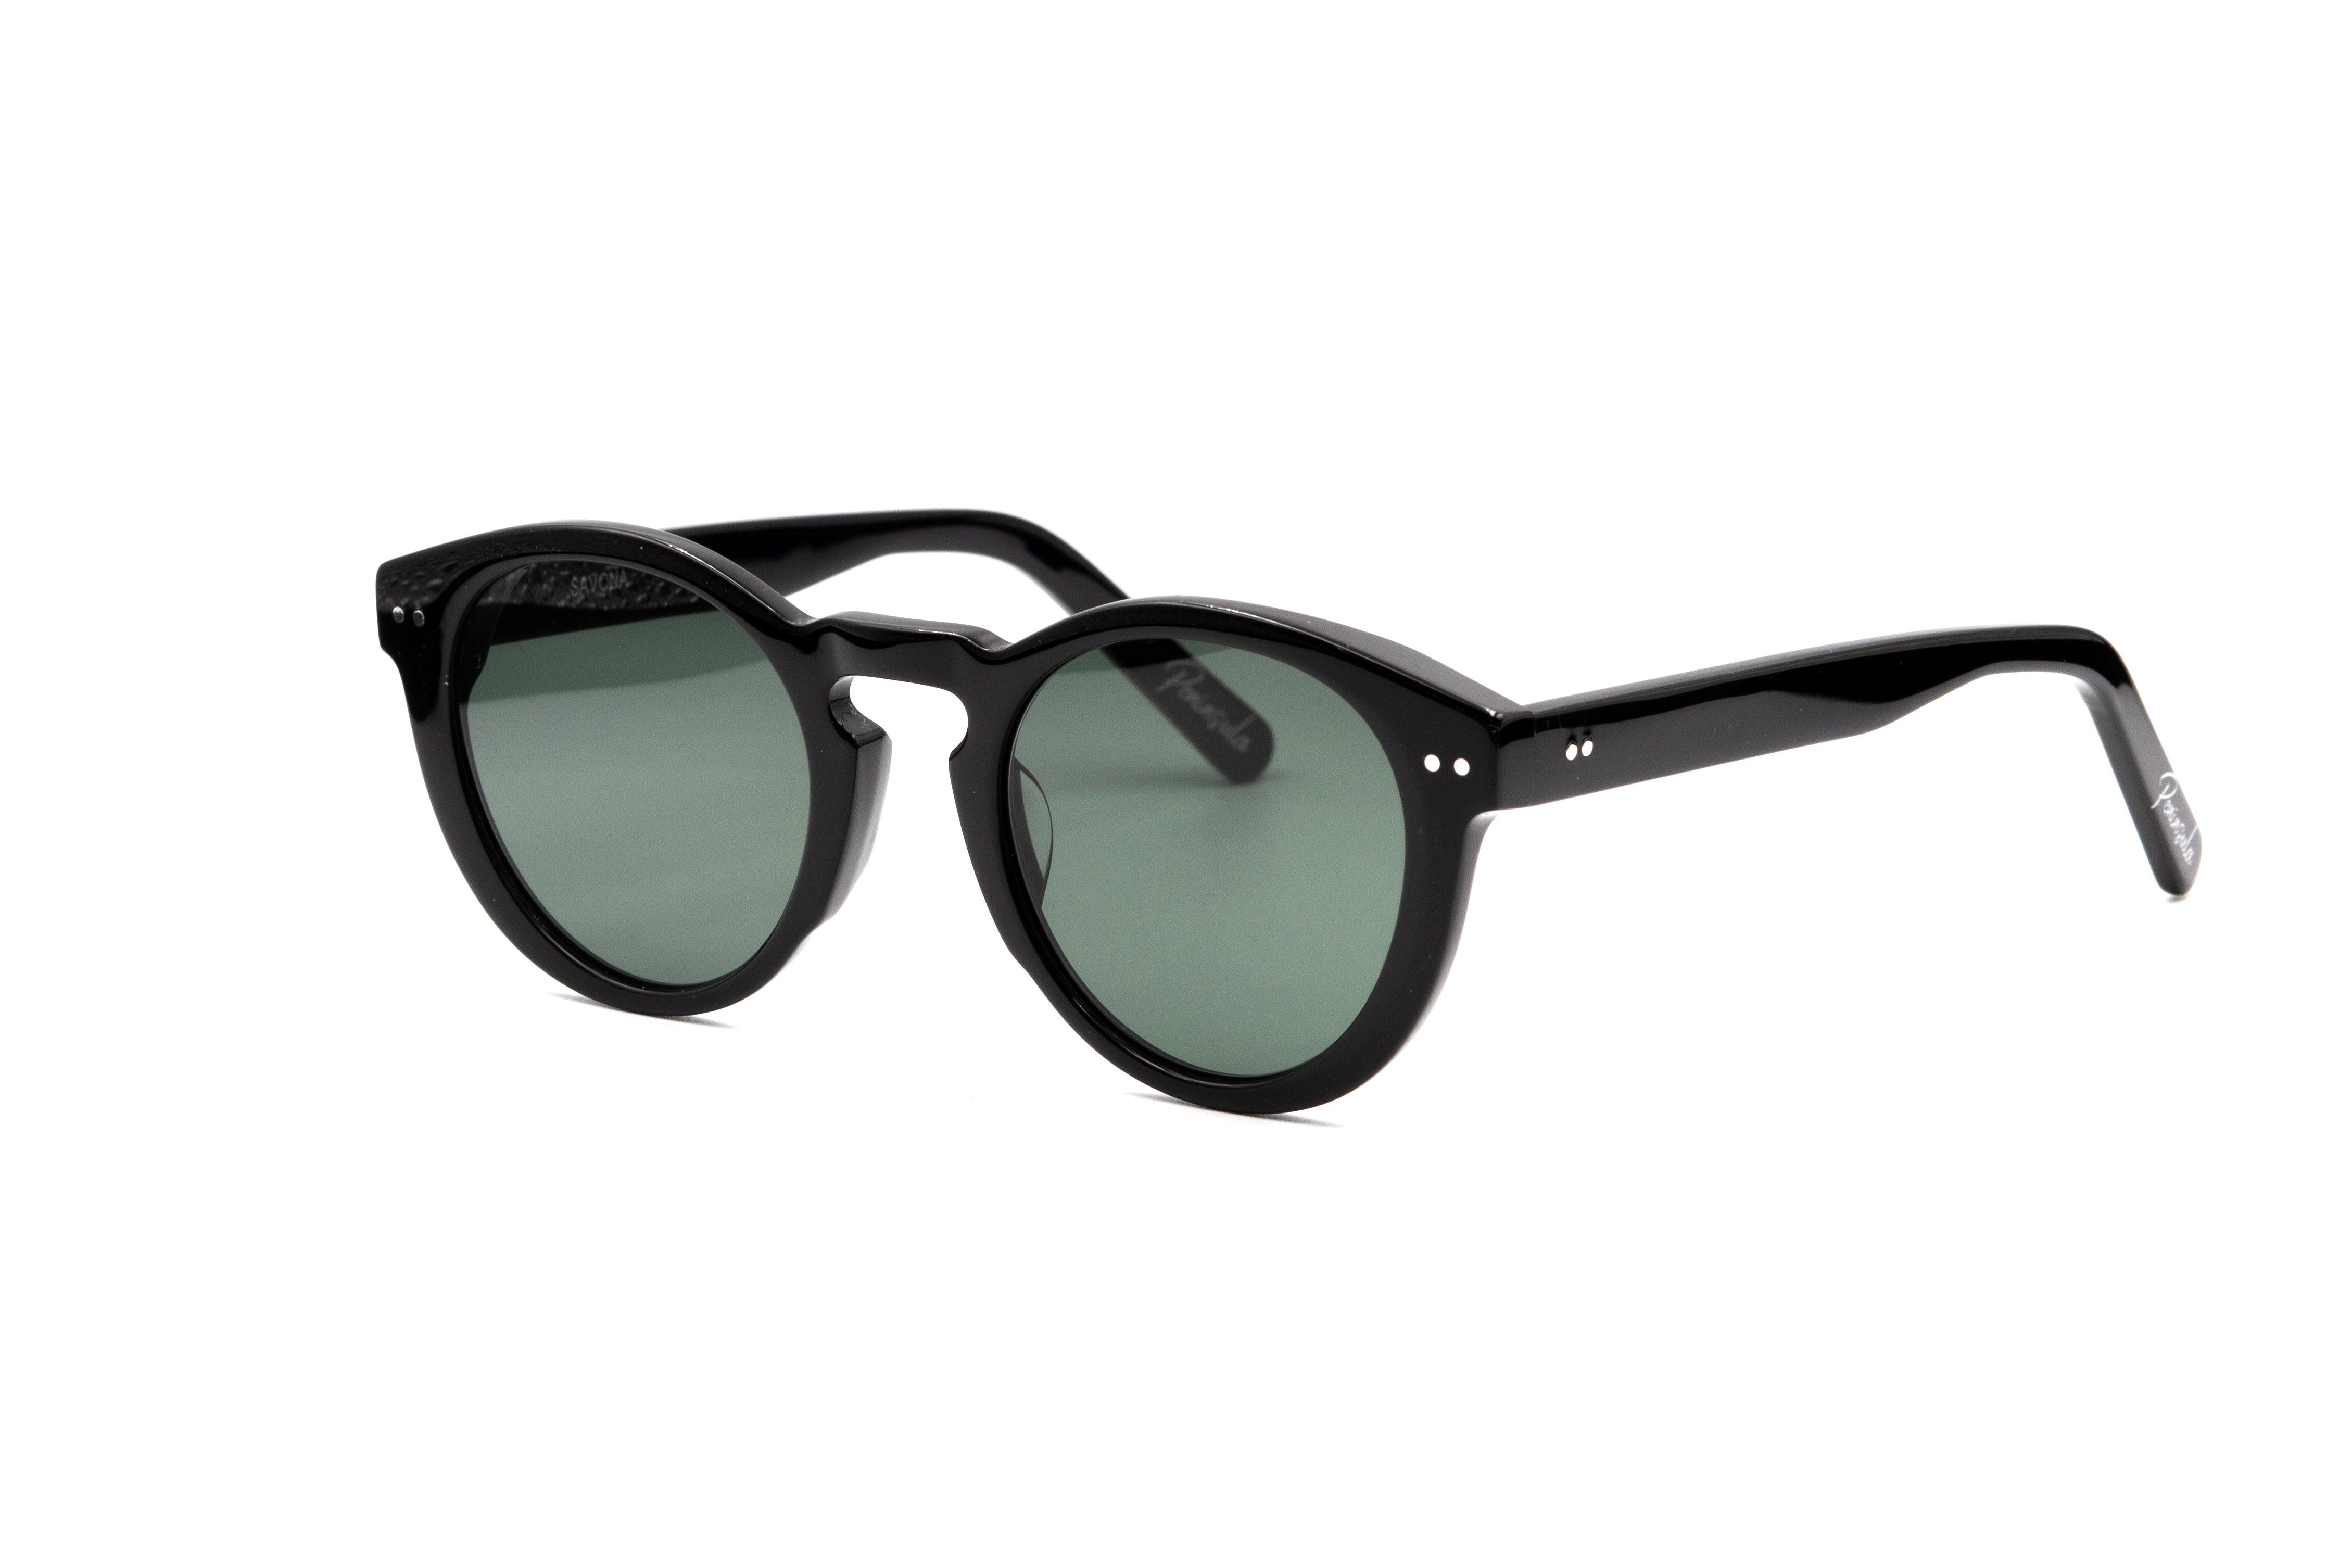 Savona - Black with Green Lens - Peninsula Eyewear